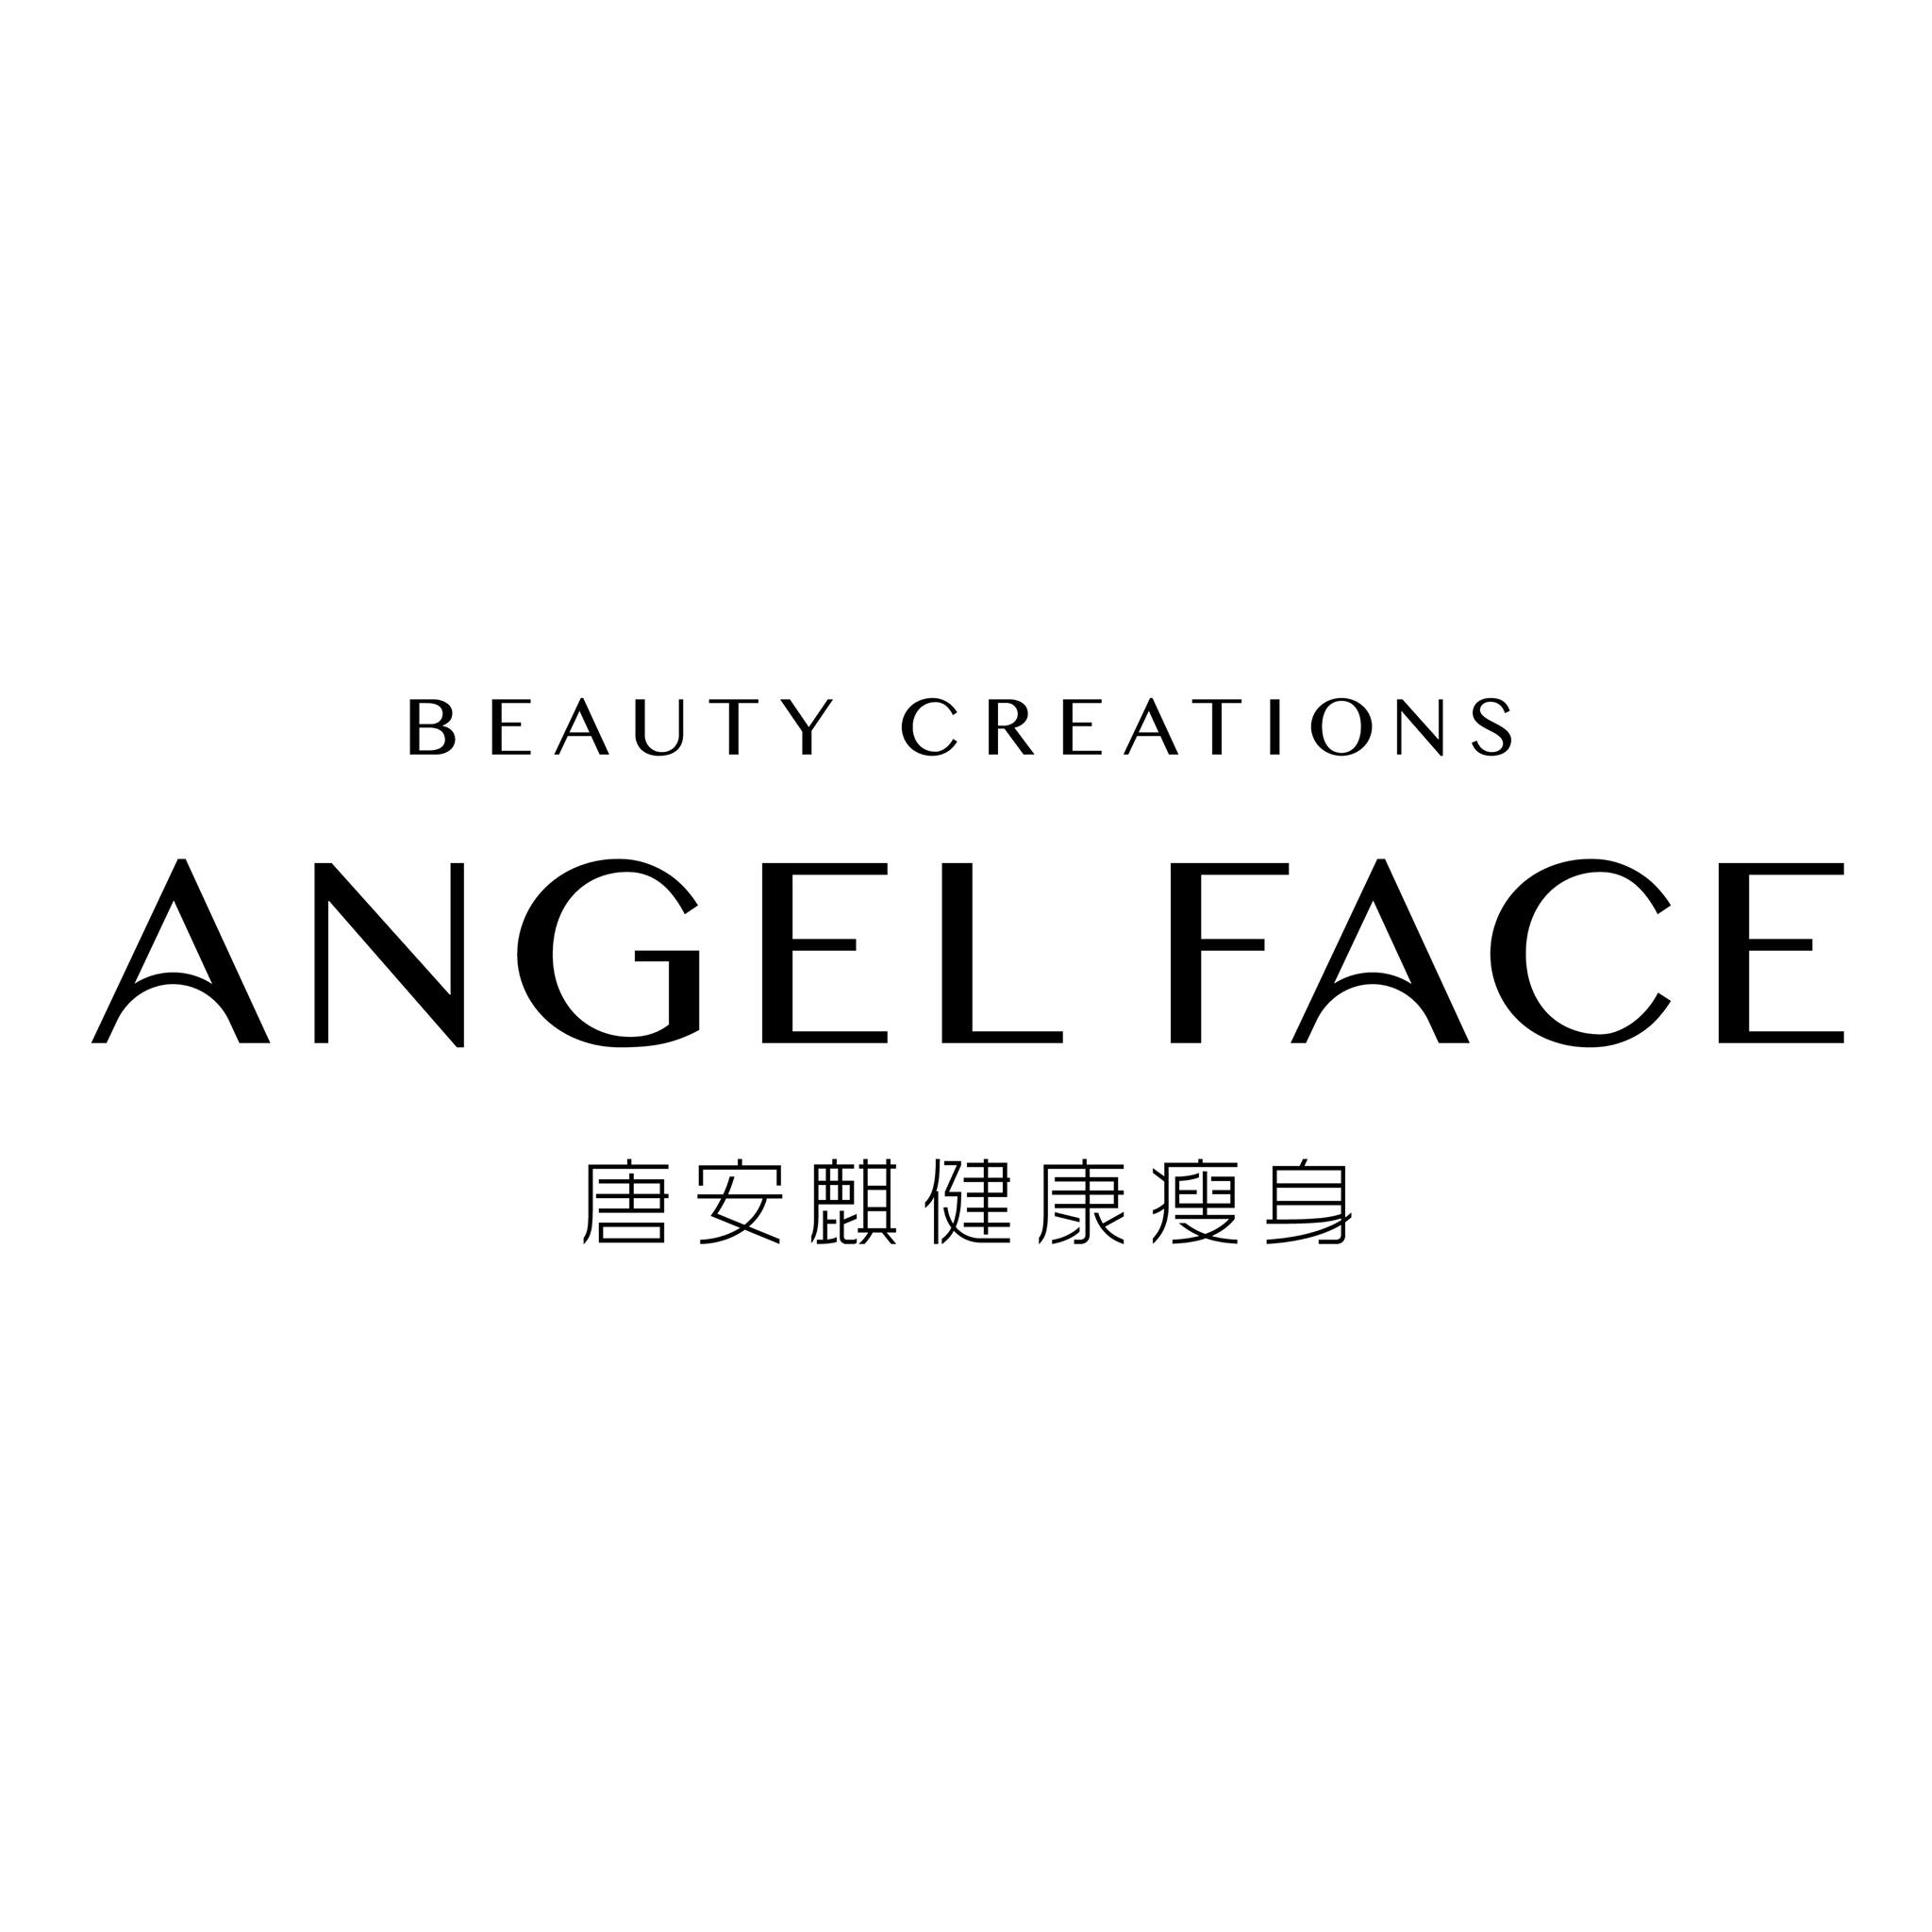 纤体瘦身: Angel Face 唐安麒美顏瘦身專門店 (九龍灣店)